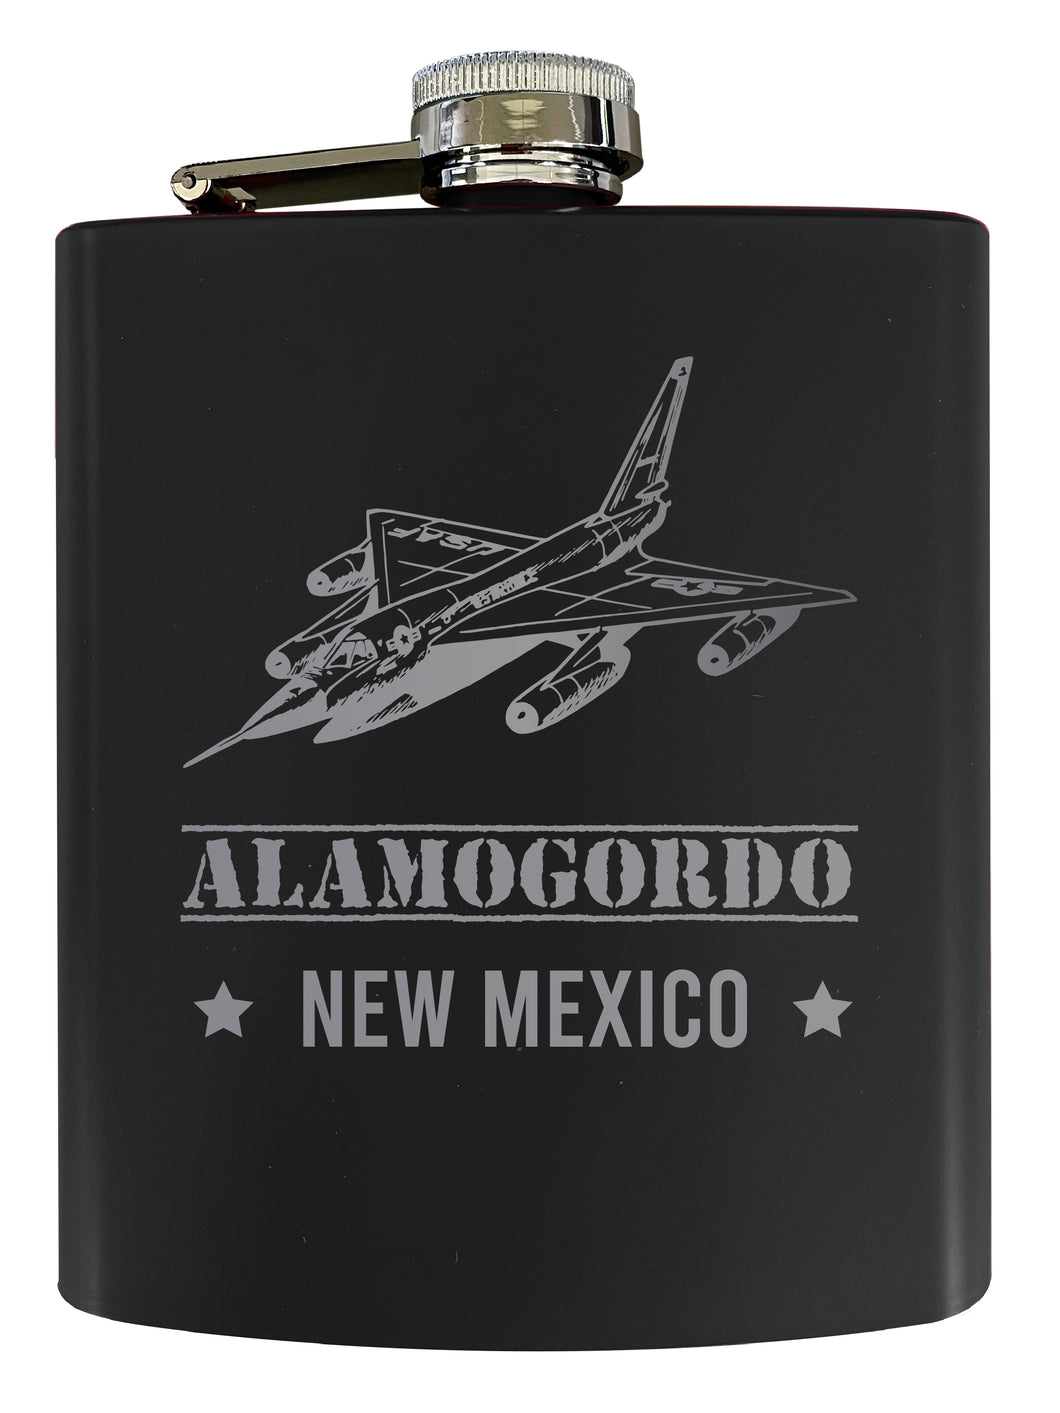 Alamogordo New Mexico Laser Engraved Souvenir 7 oz Stainless Steel Flask Black